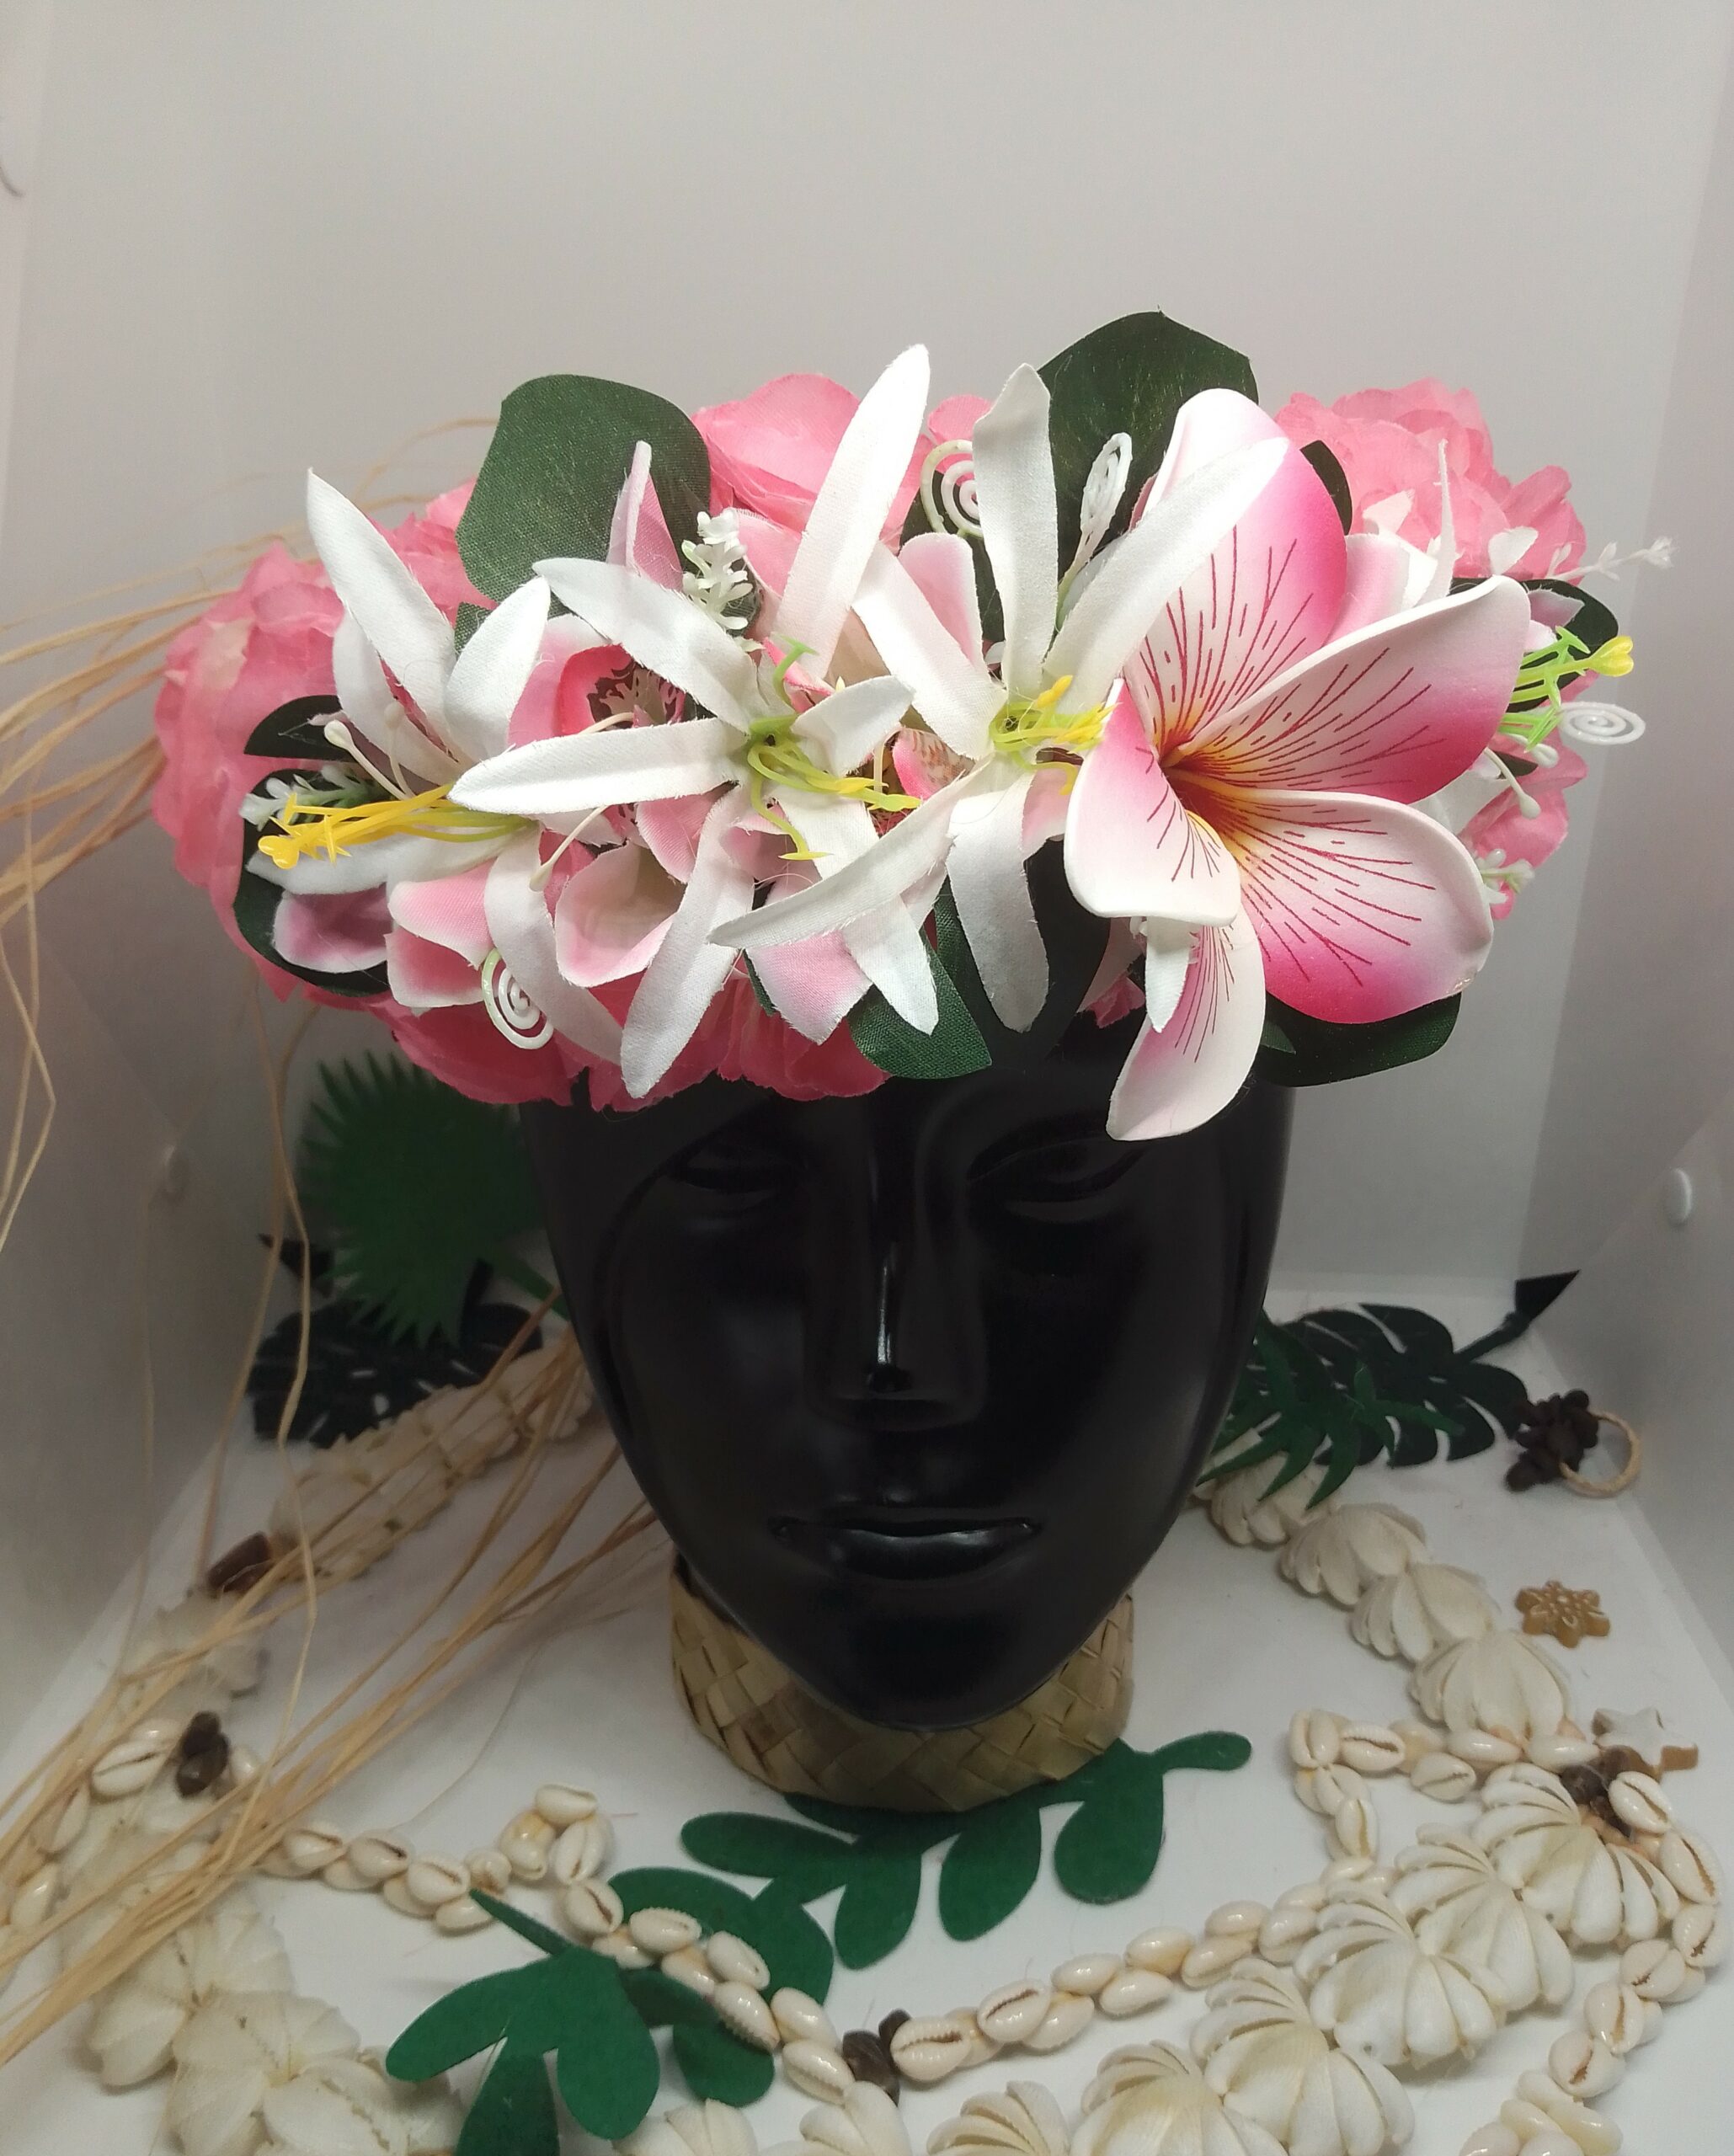 couronne de tête rose by Vaite e Tiare créations avec orchidées roses, lys élancés blancs et grand frangipanier rose